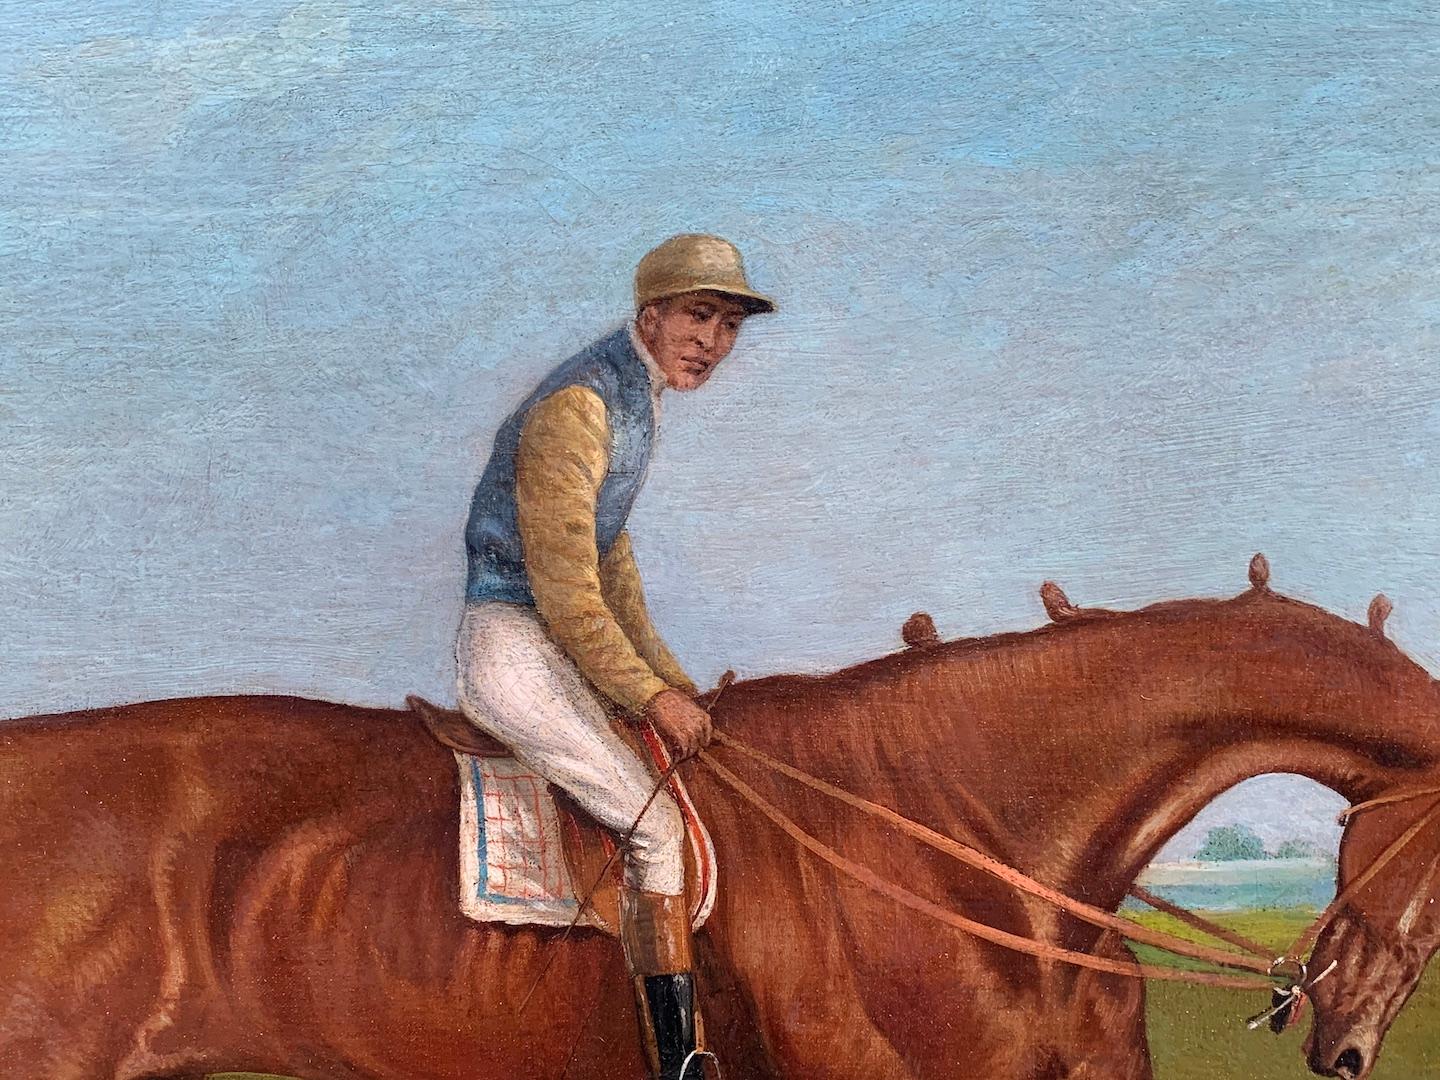  scène de course de chevaux ancienne anglaise du 19e siècle dans un paysage avec Jockey au sommet - Victorien Painting par John Frederick Herring Sr.